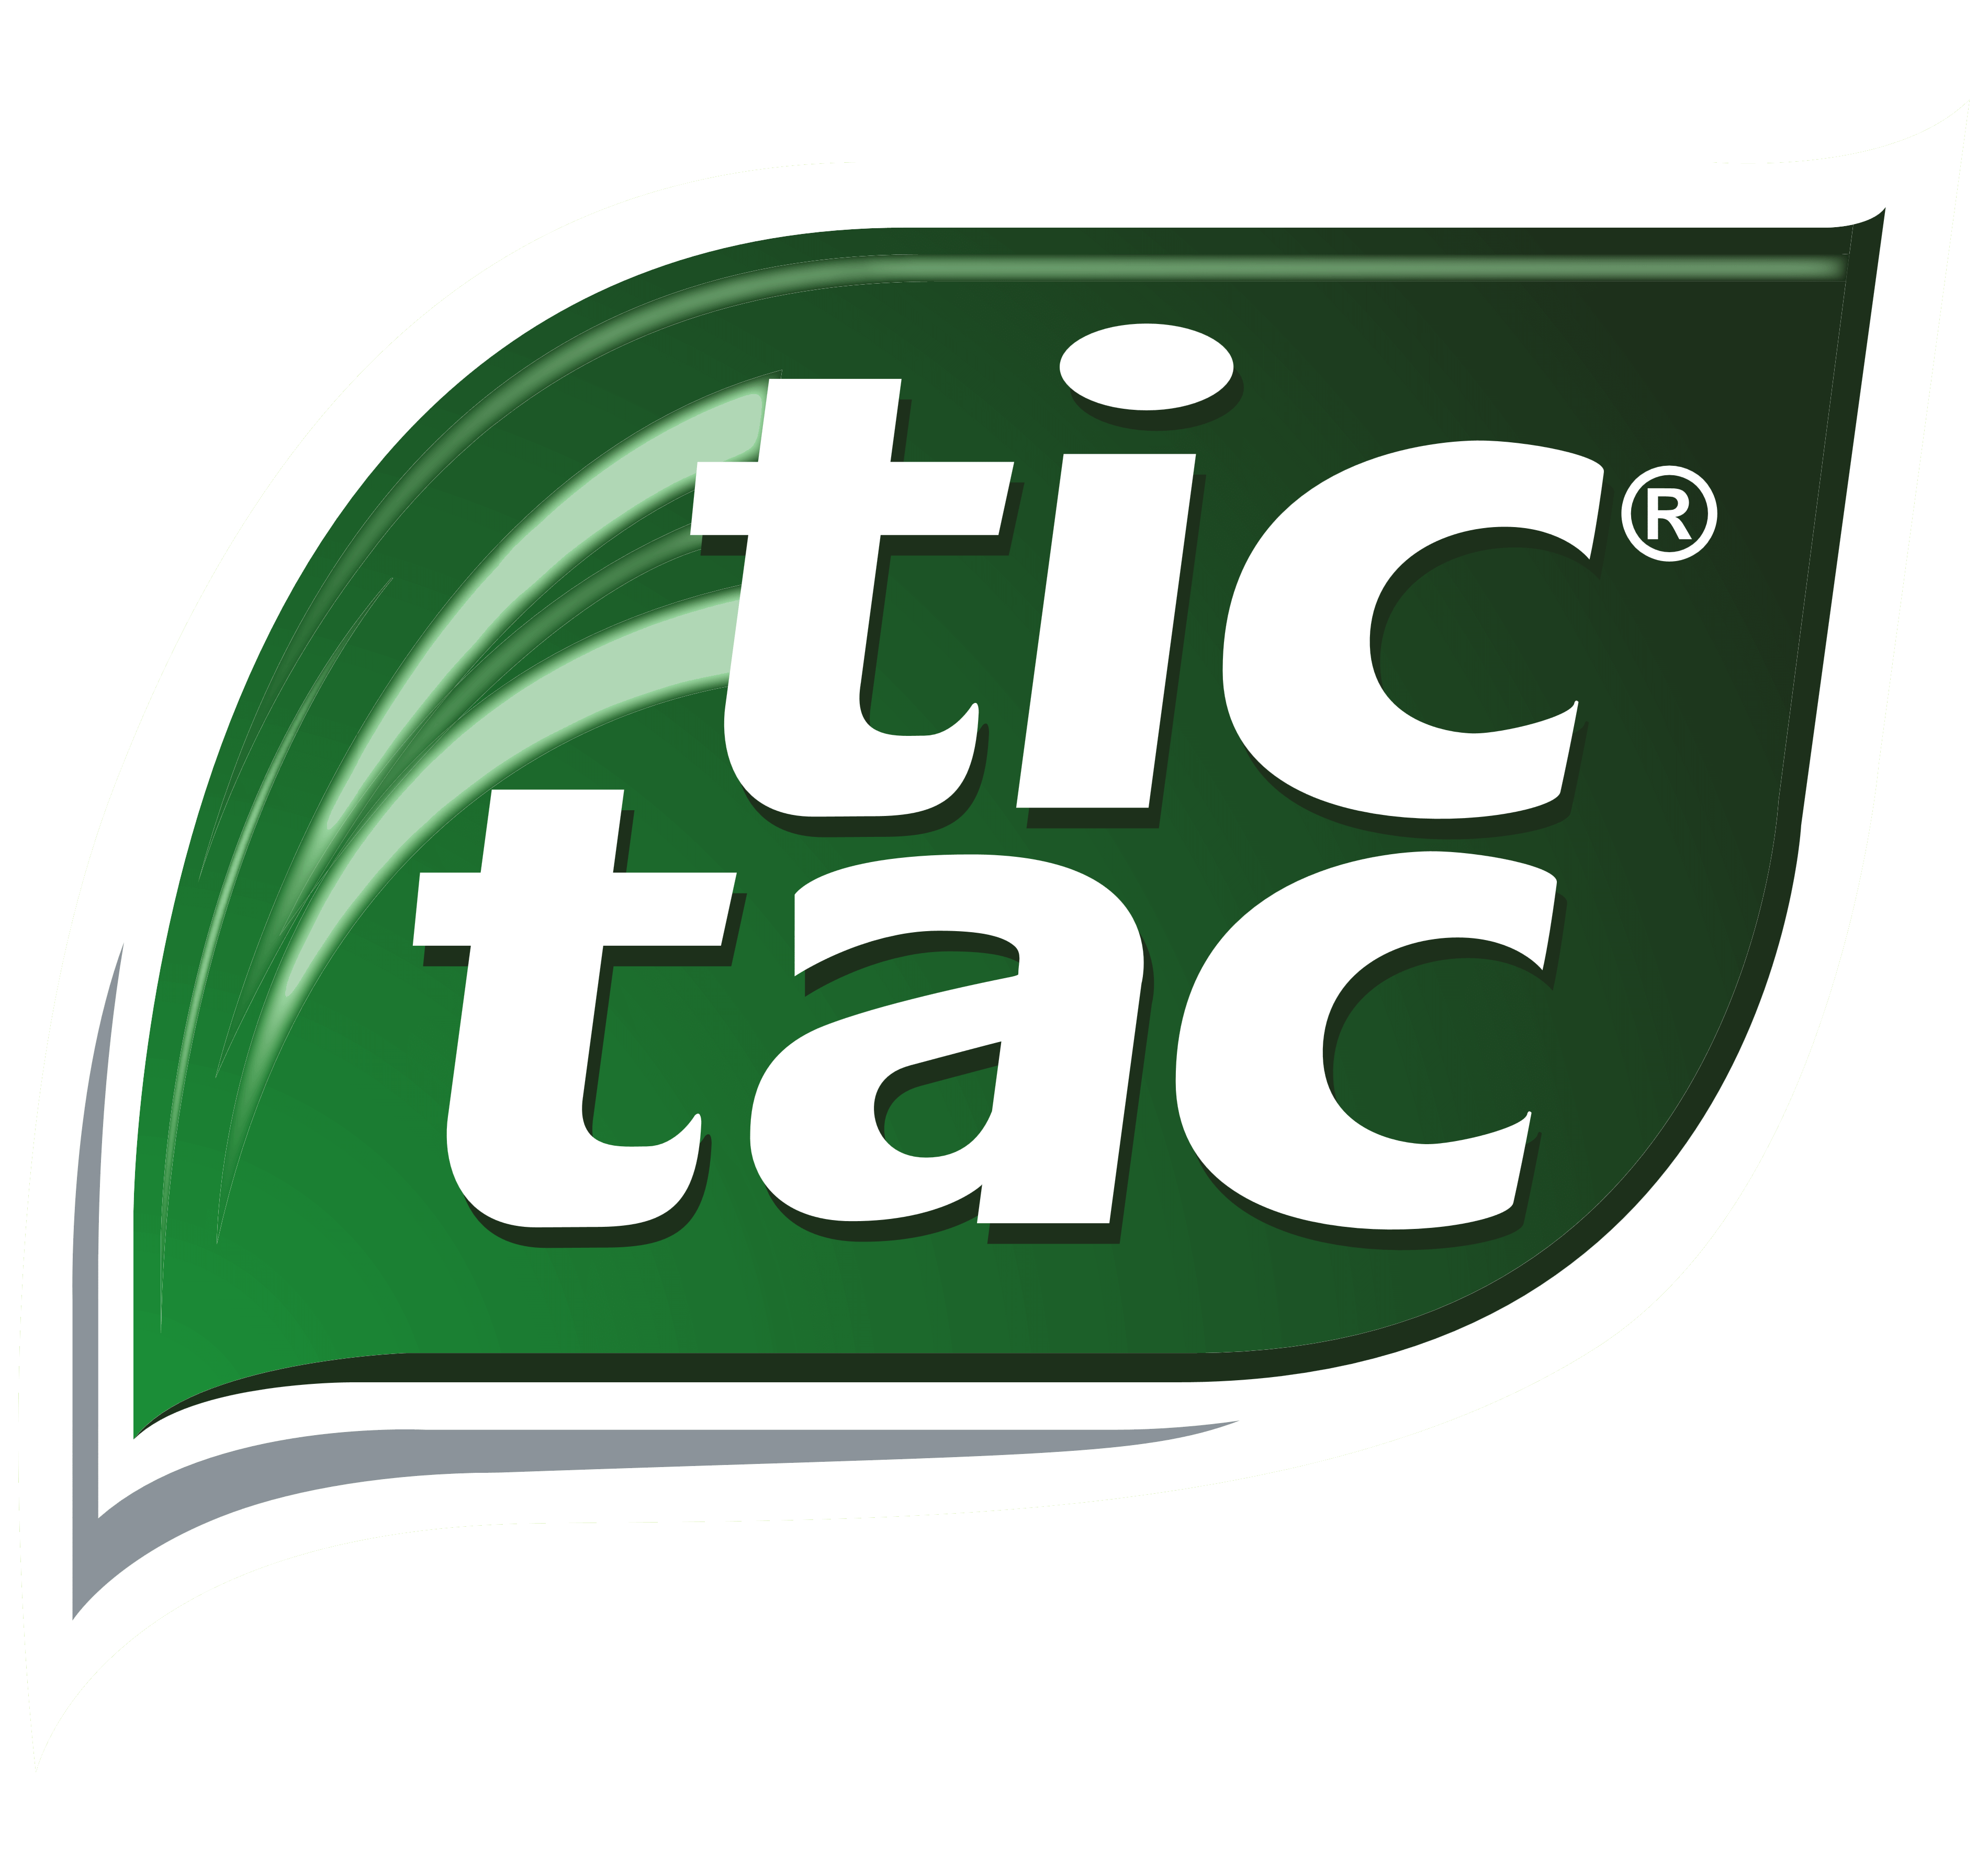 Tic Tac logo, logotype